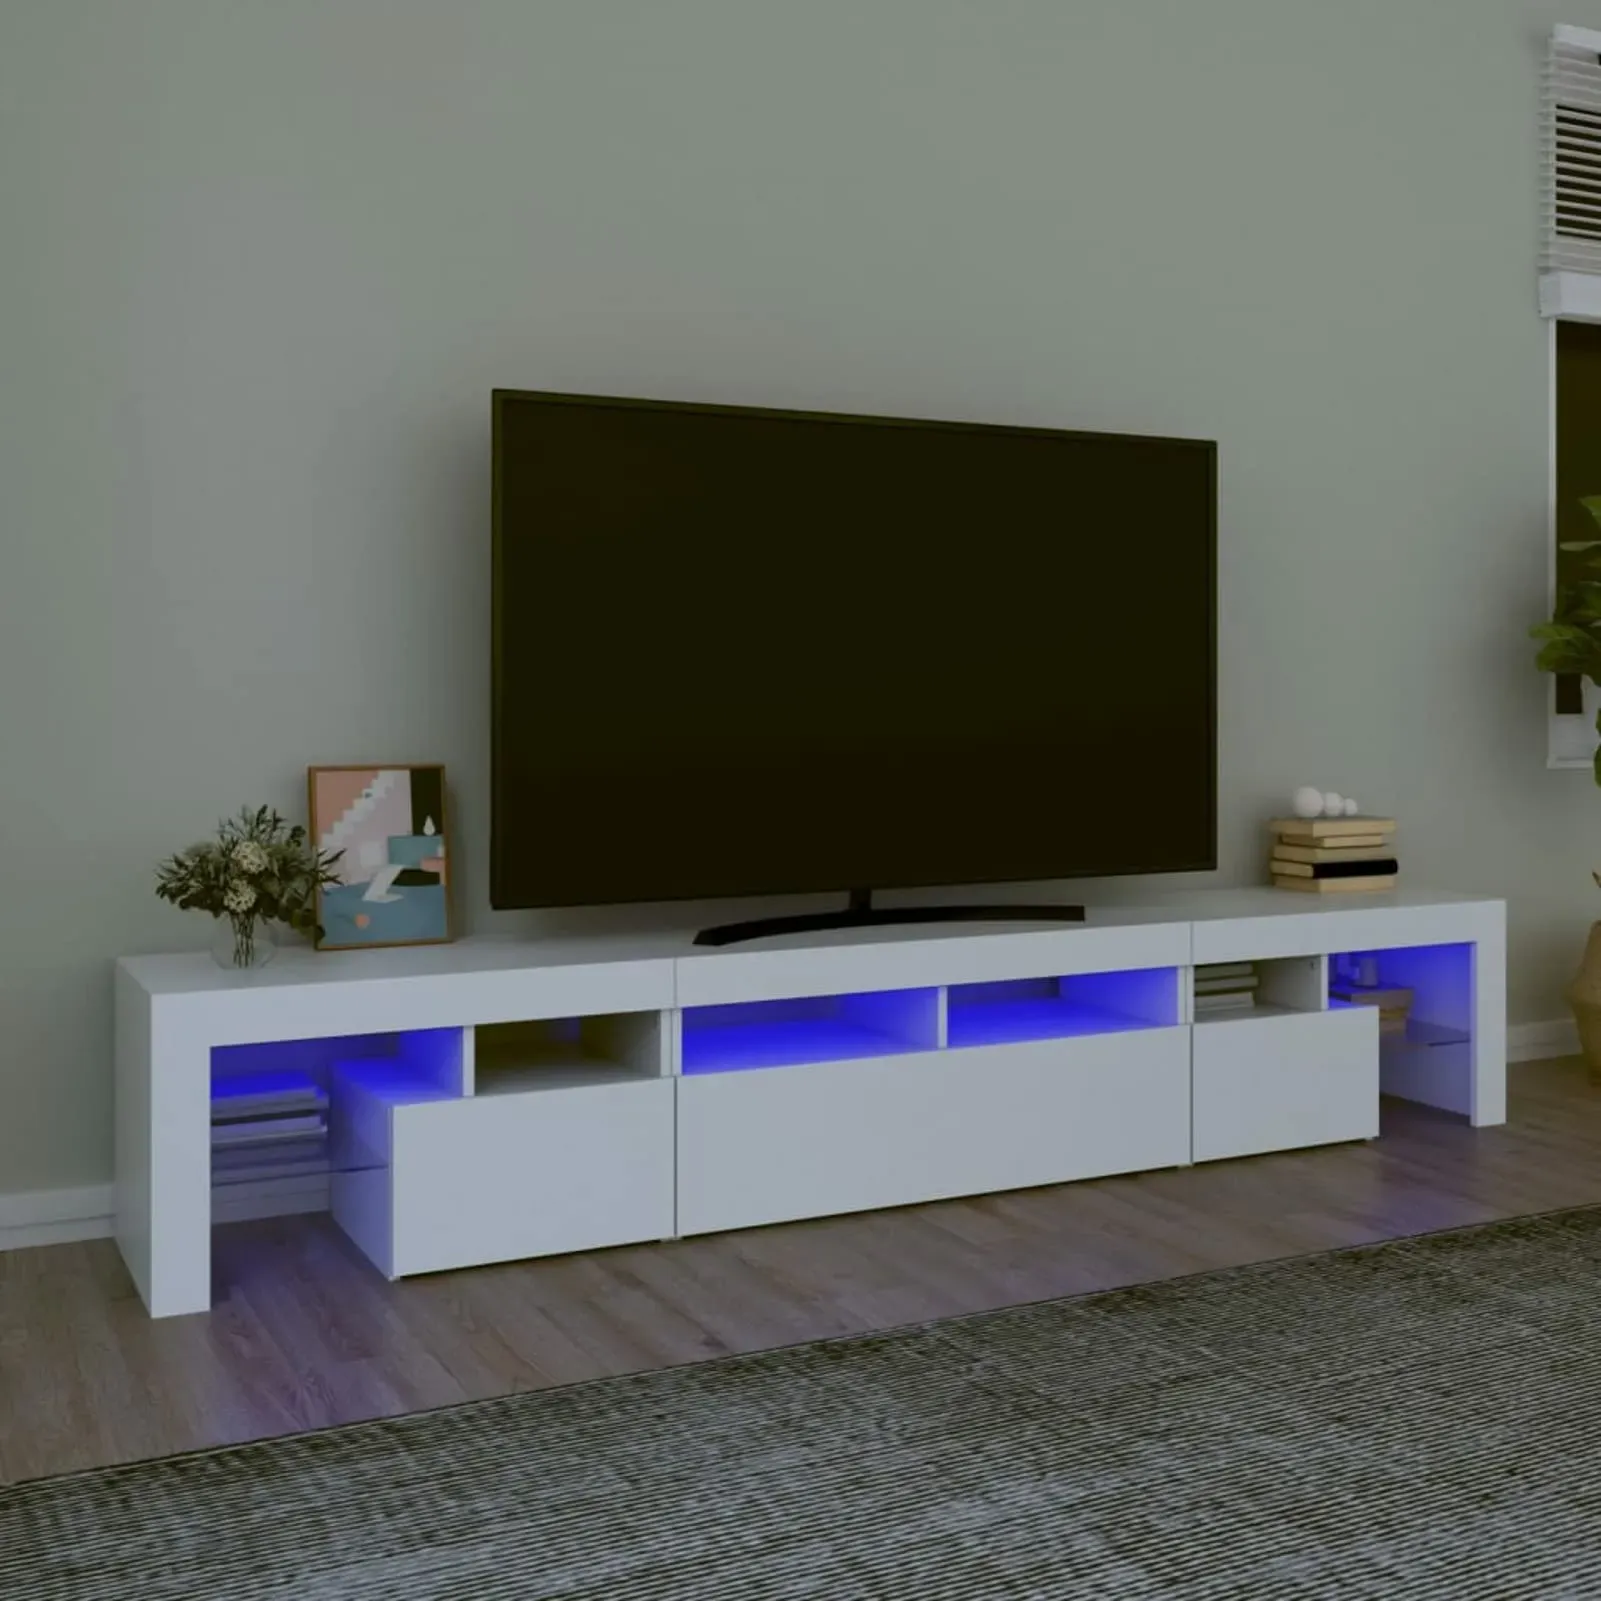 SECOLI tv Schrank led 230cm TV Lowboard mit LED TV Board Fernsehschrank TV-Schrank TV-Kommode tv Bank tv Möbel Sideboard für Wohnzimmer Schlafzimmer Möbel-Weiß-230 x 36.5 x 40 cm